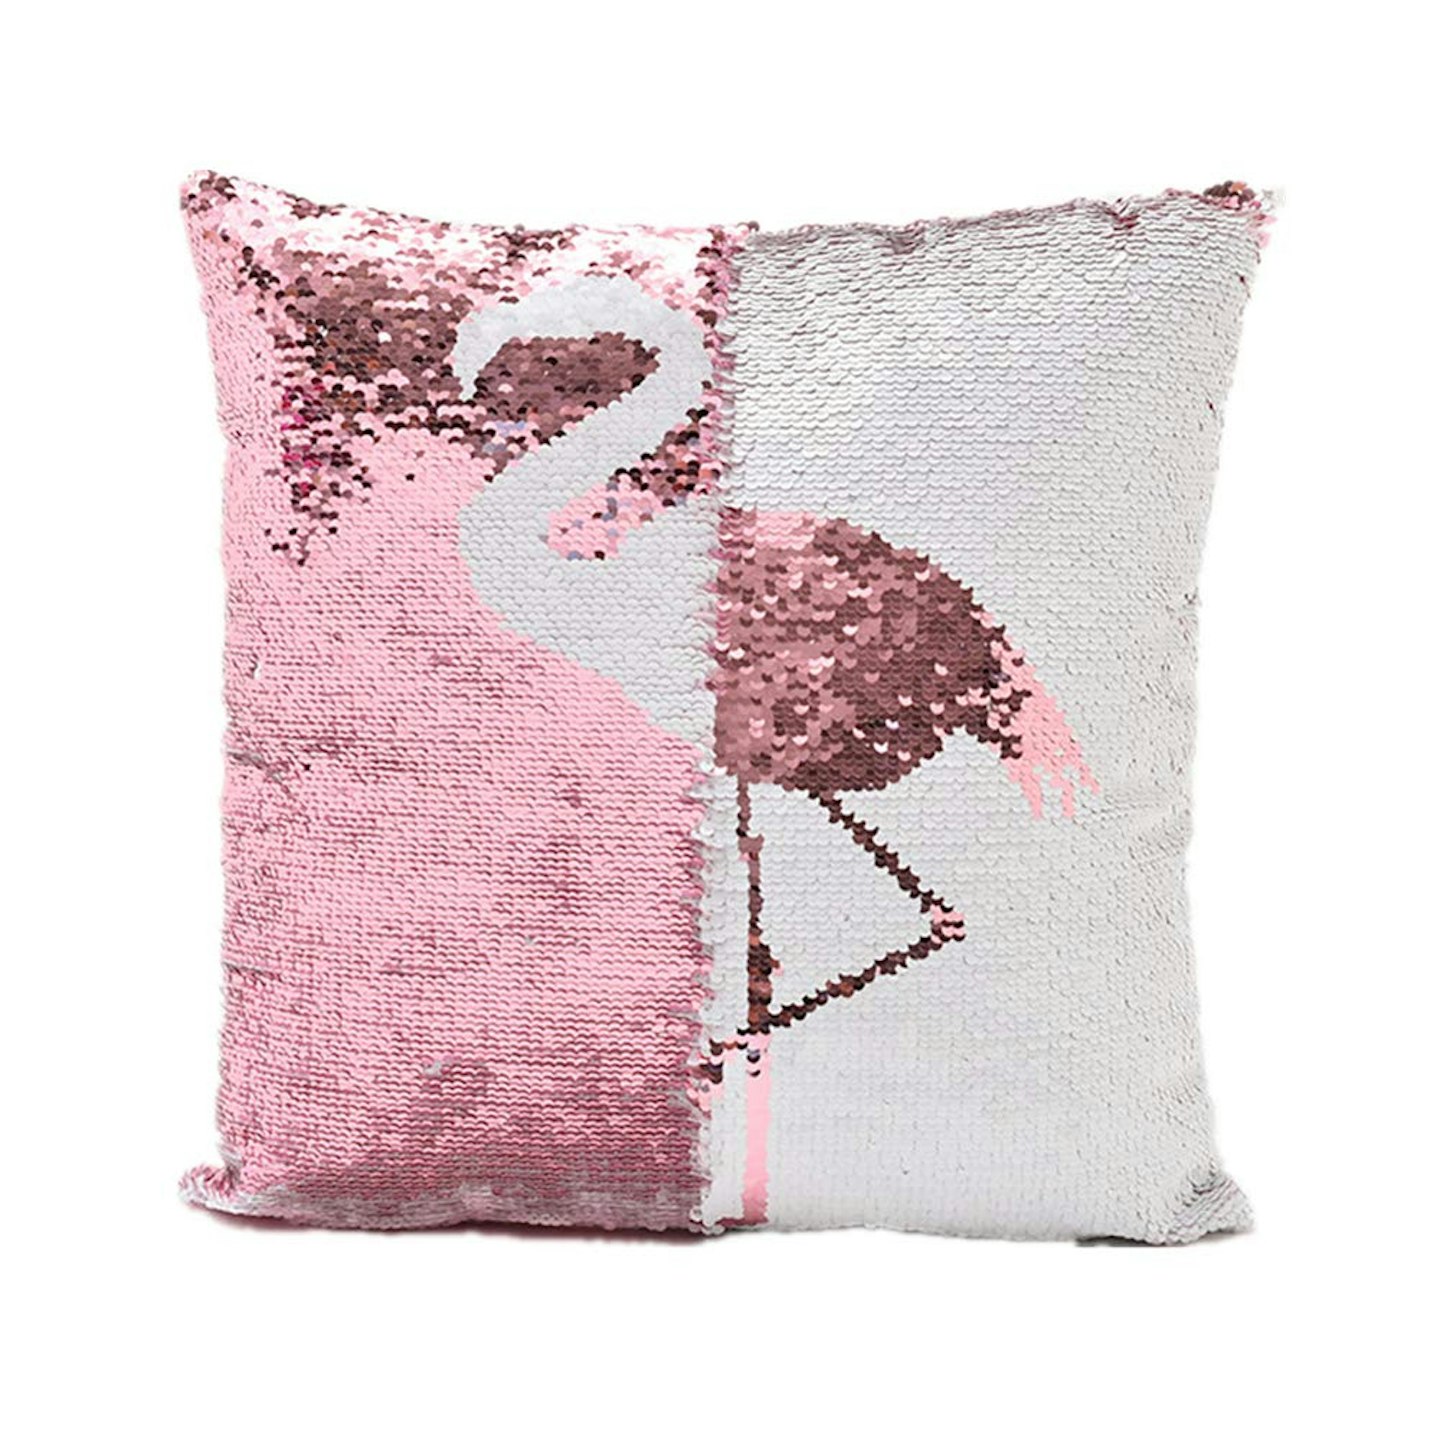 Magic double colours reversible sequin flamingo pillow cover, £7.99